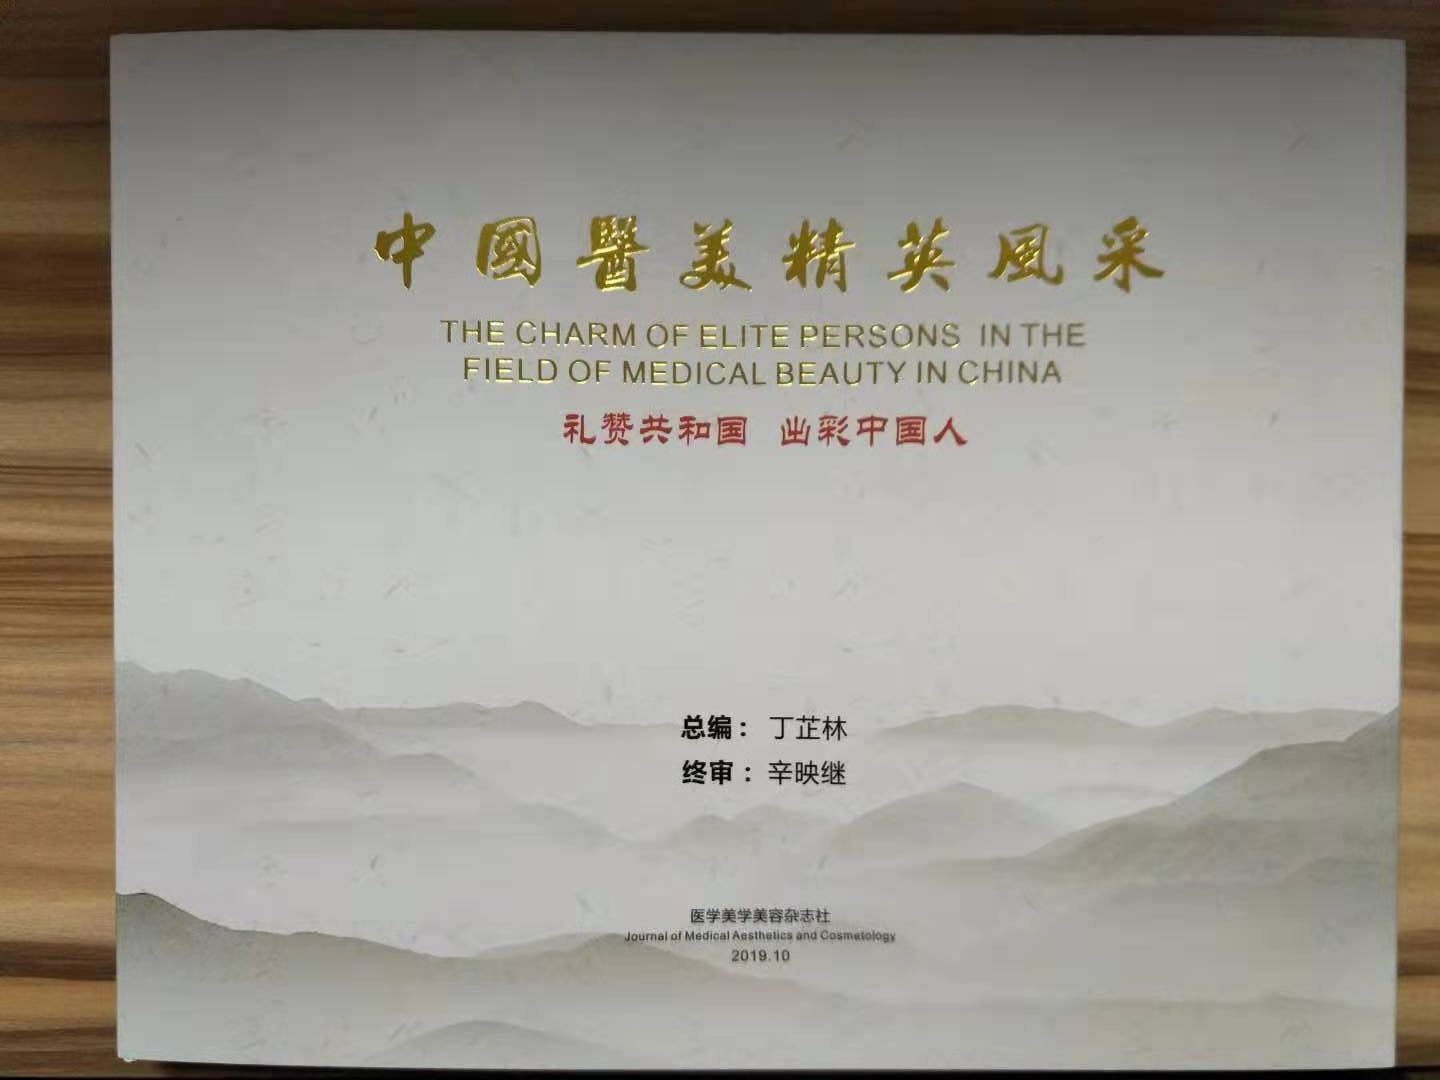 祝贺《中国医美精英风采》出版 祝贺蔡景龙教授入选医美学会领军人物